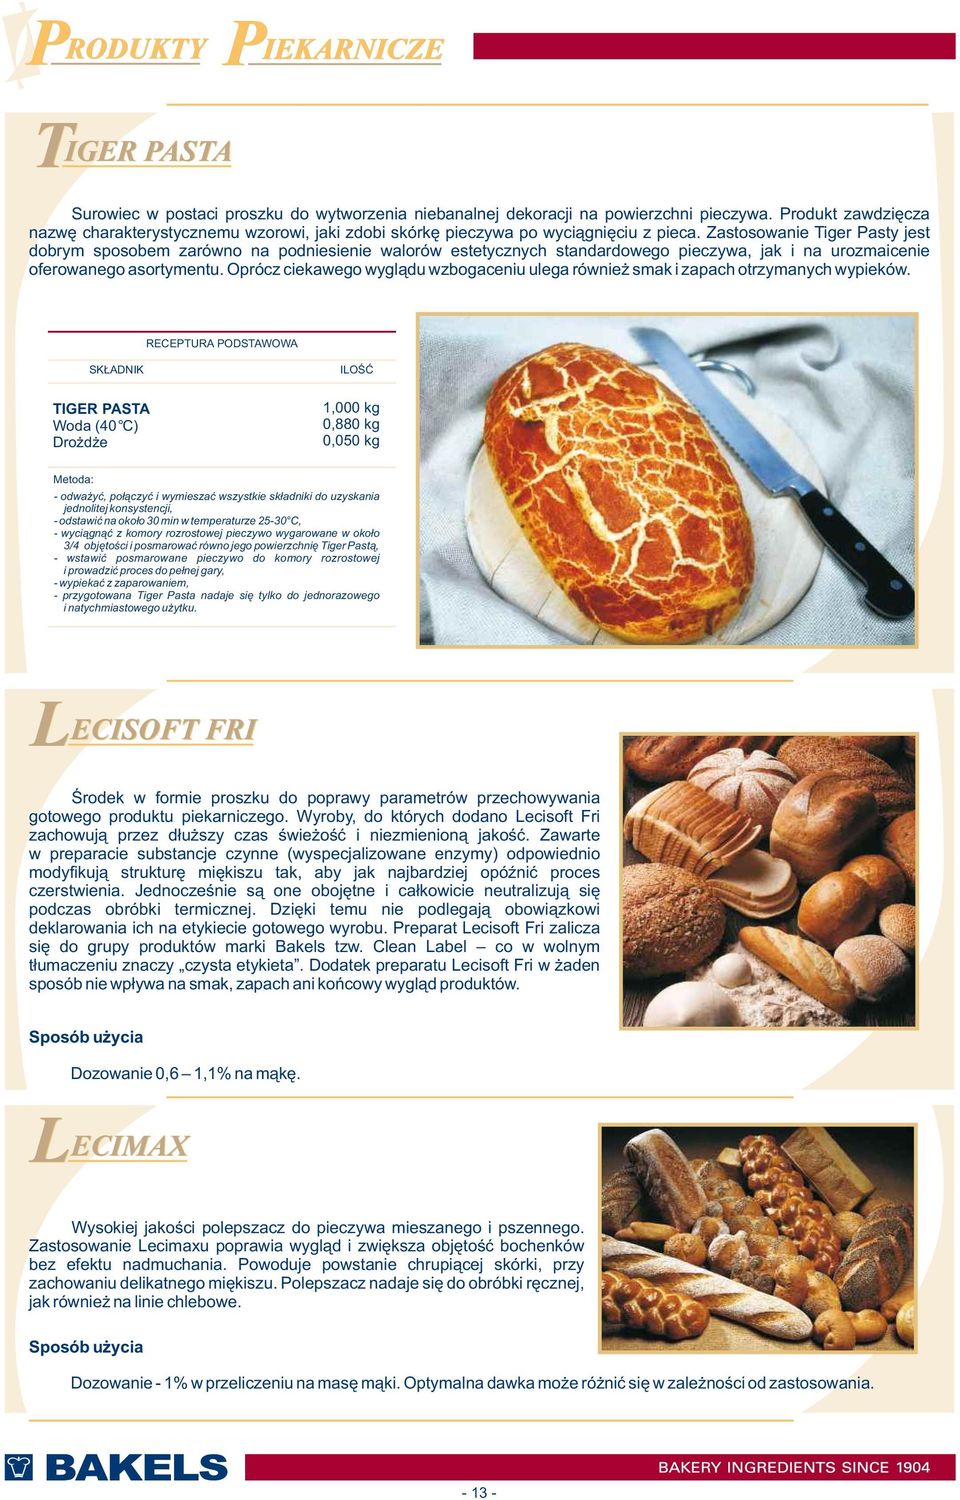 Zastosowanie Tiger Pasty jest dobrym sposobem zarówno na podniesienie walorów estetycznych standardowego pieczywa, jak i na urozmaicenie oferowanego asortymentu.